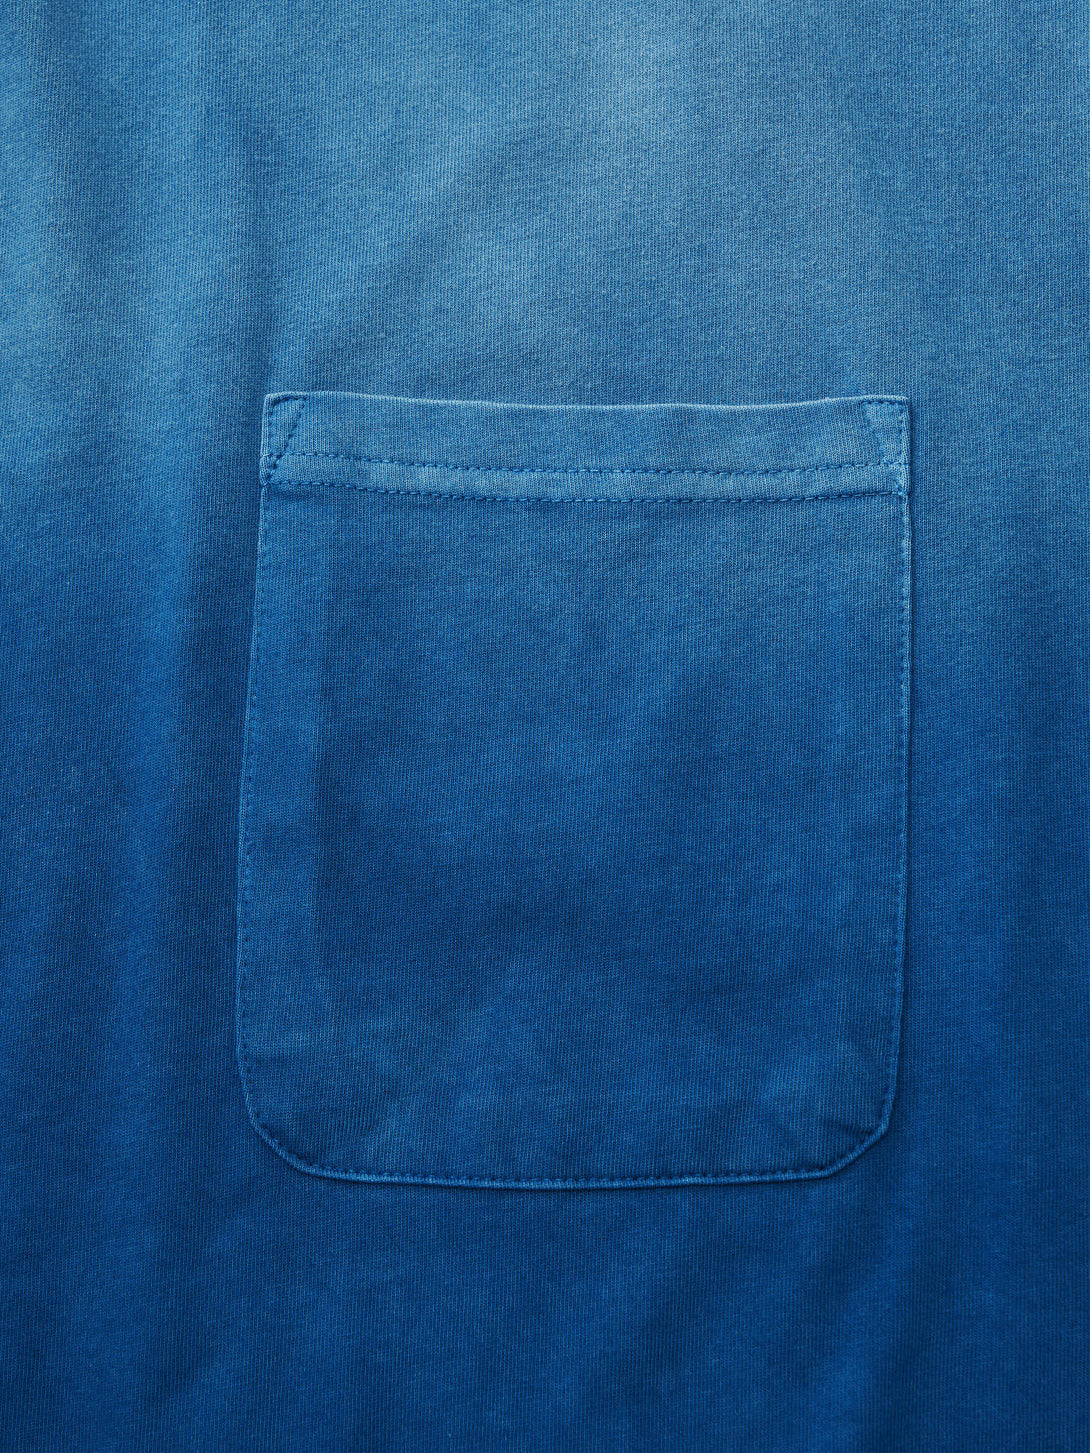 藍染めグラデーションTシャツの首元、濃淡の異なるブルーのグラデーションが特徴